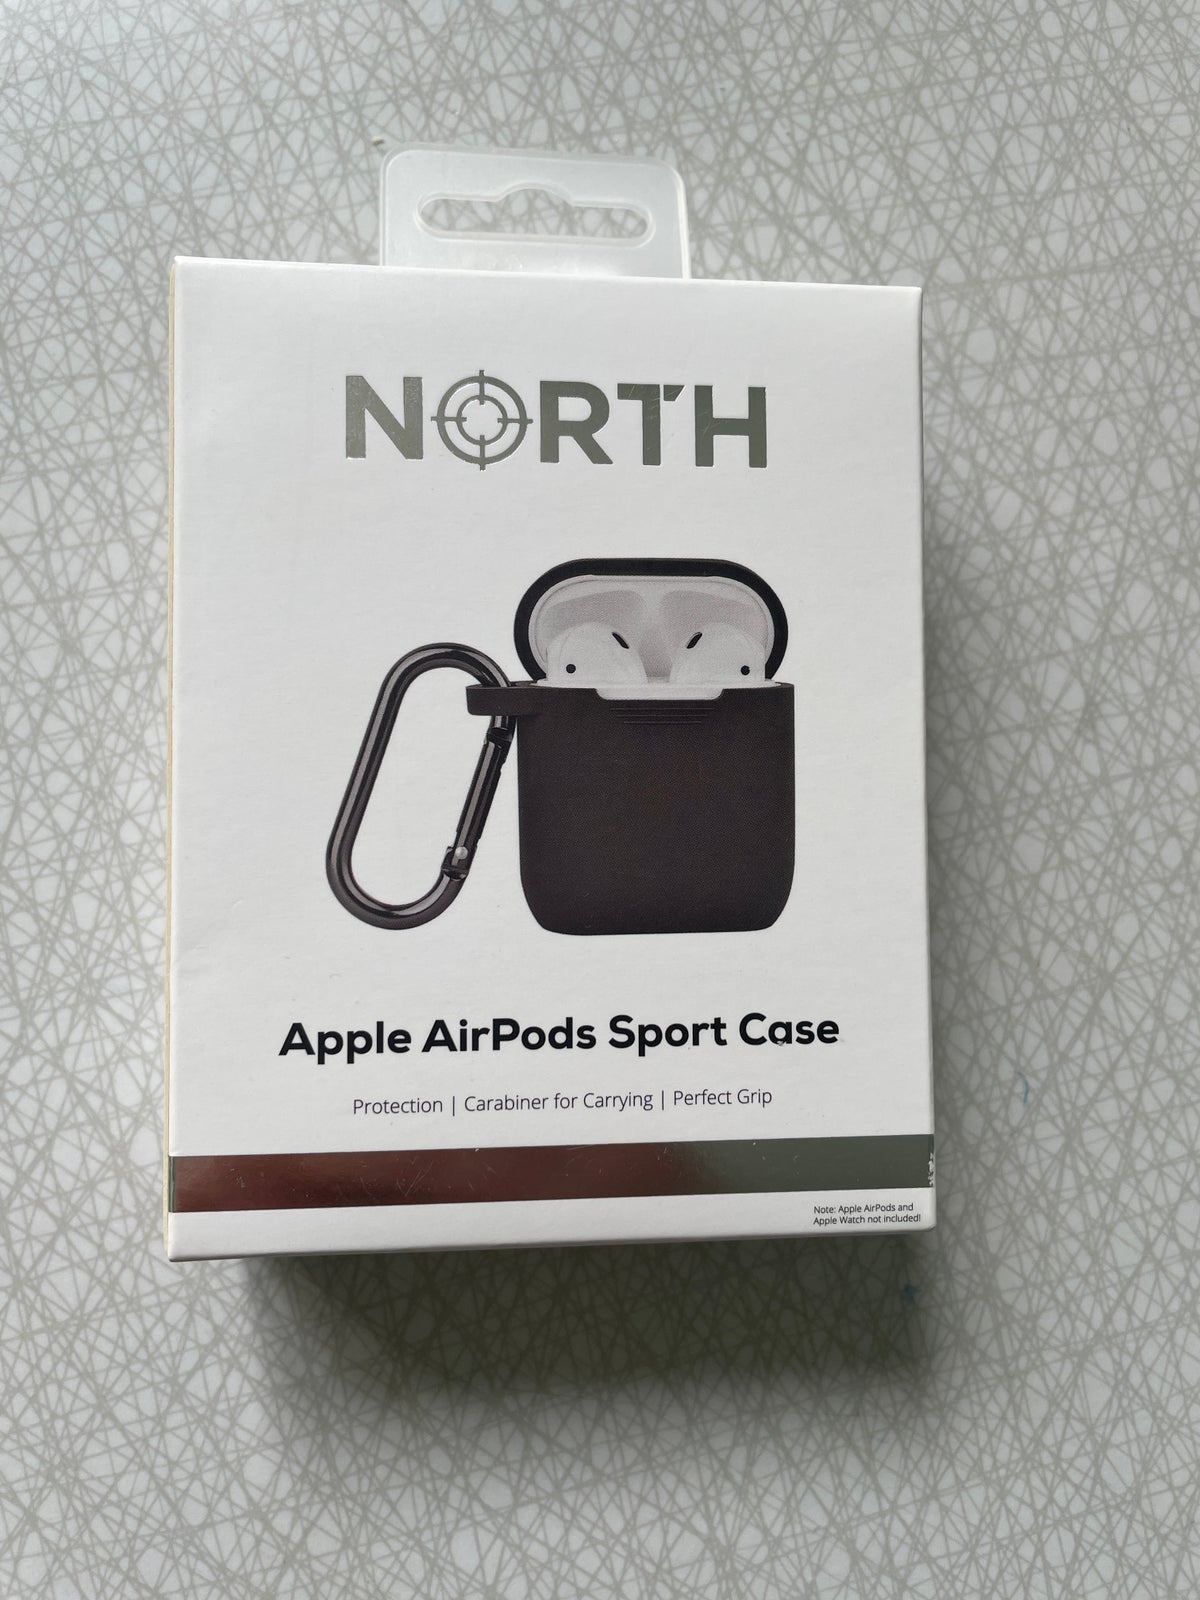 Andet tilbehør, North, Apple AirPods case